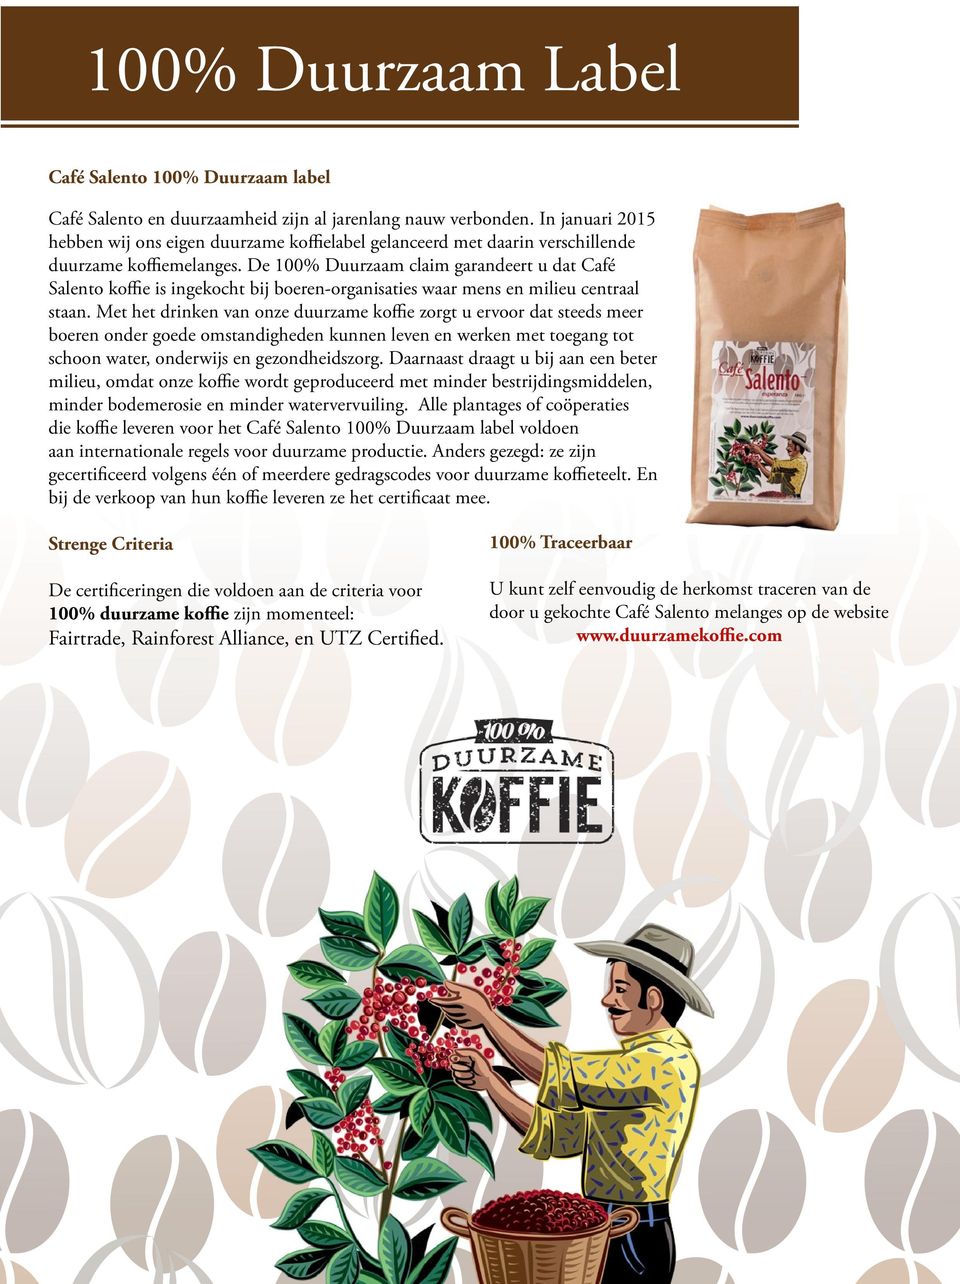 De 100% Duurzaam claim garandeert u dat Café Salento koffie is ingekocht bij boeren-organisaties waar mens en milieu centraal staan.